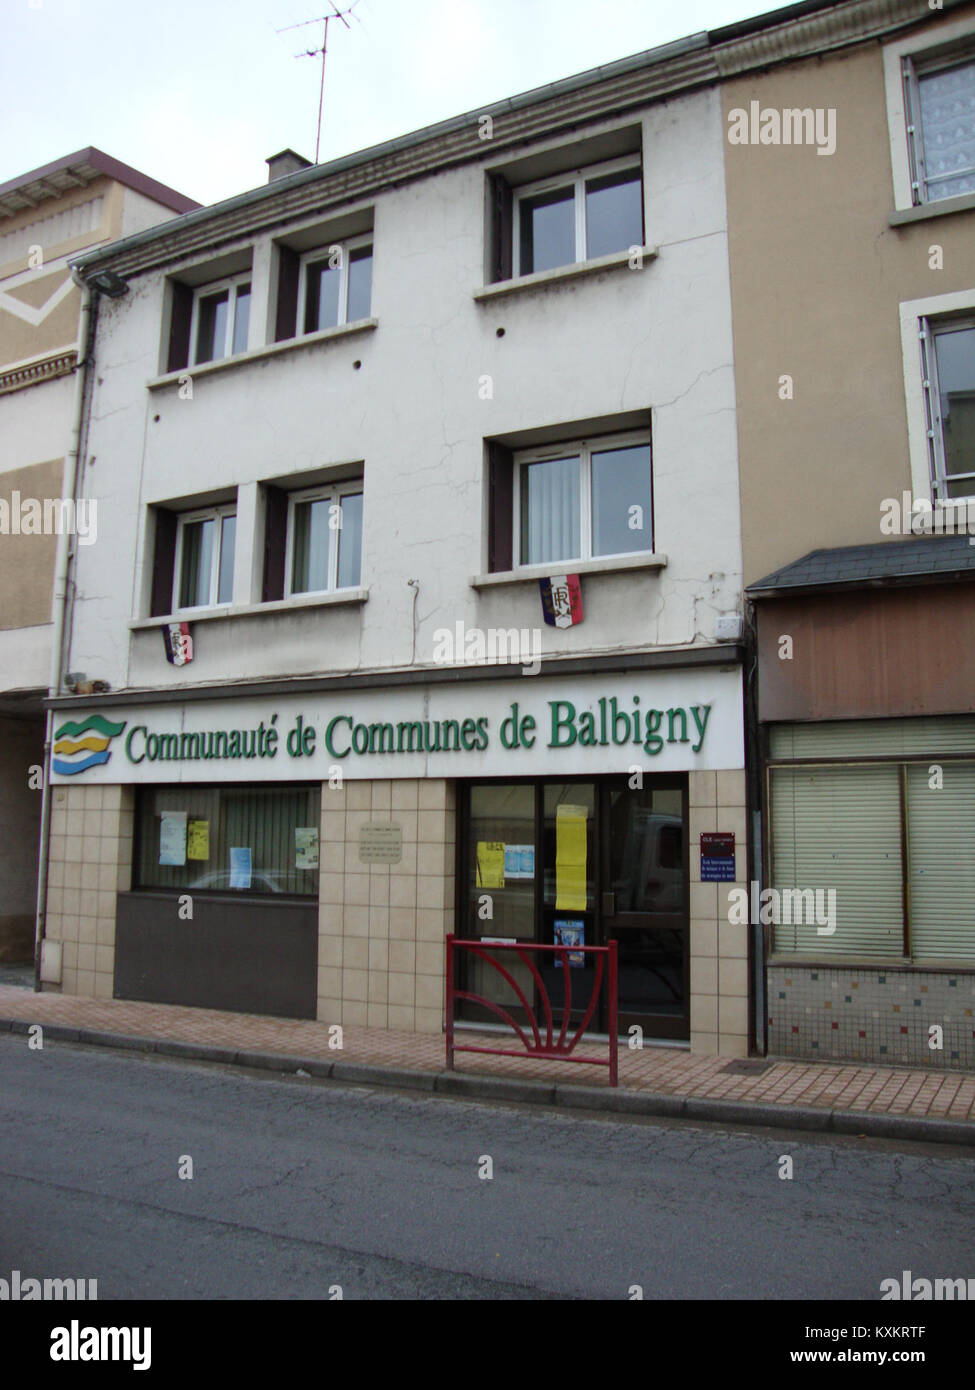 Balbigny (Loire, Fr) maison Communauté des Communes de Balbigny Foto Stock